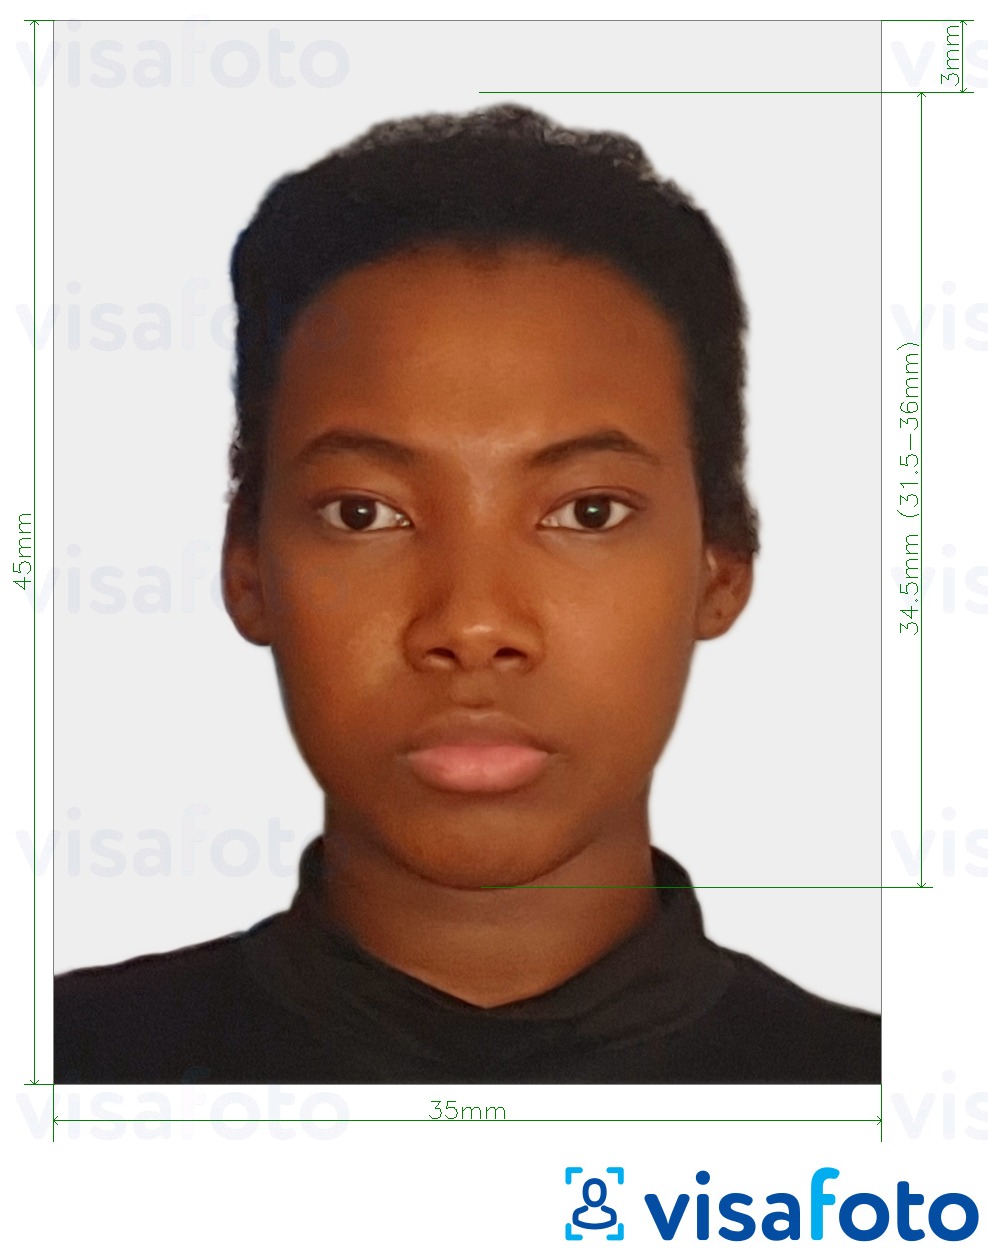 Primjer fotografije za Zambijska viza 35x45 mm (3,5x4,5 cm) s točno određenom veličinom